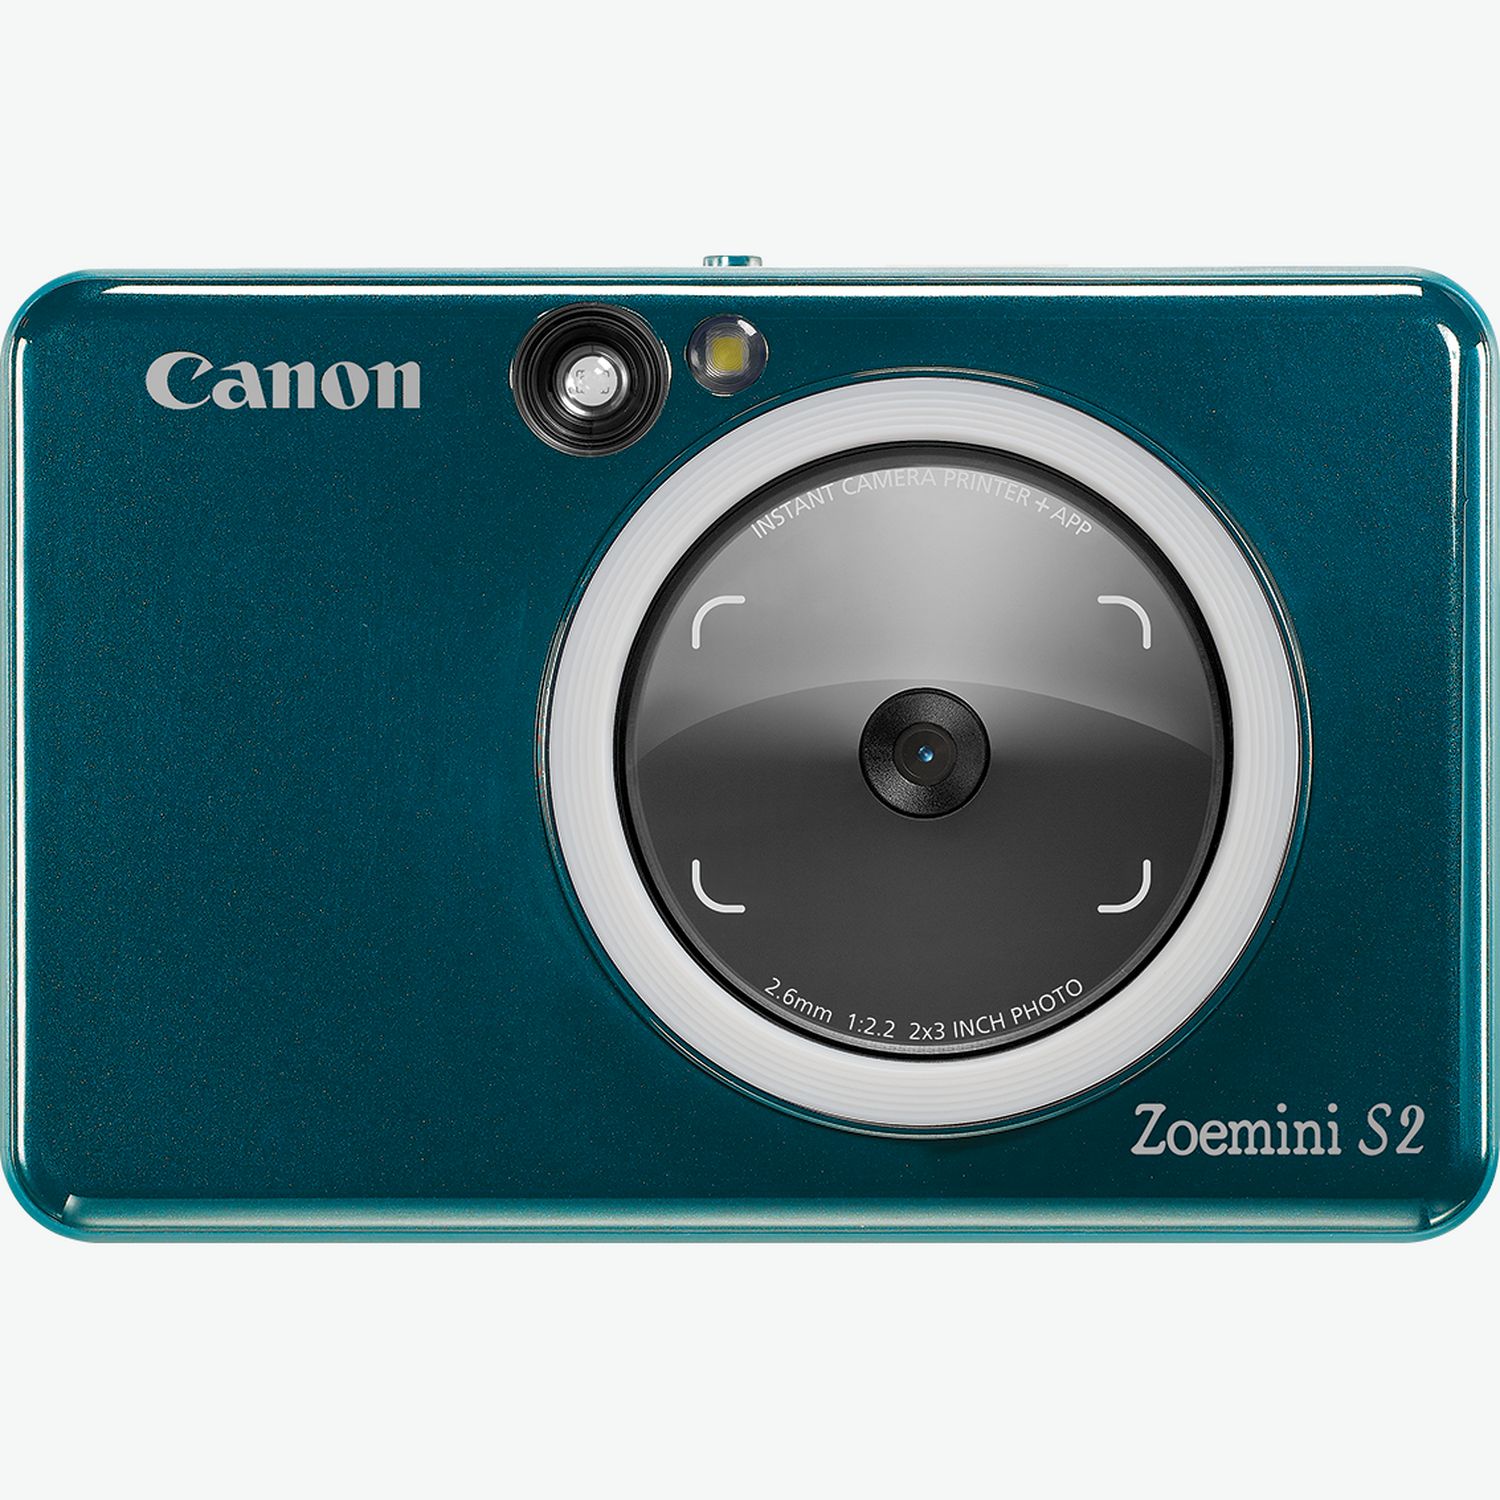 canon zoemini s2 instant camera colour photo printer teal 4519C008